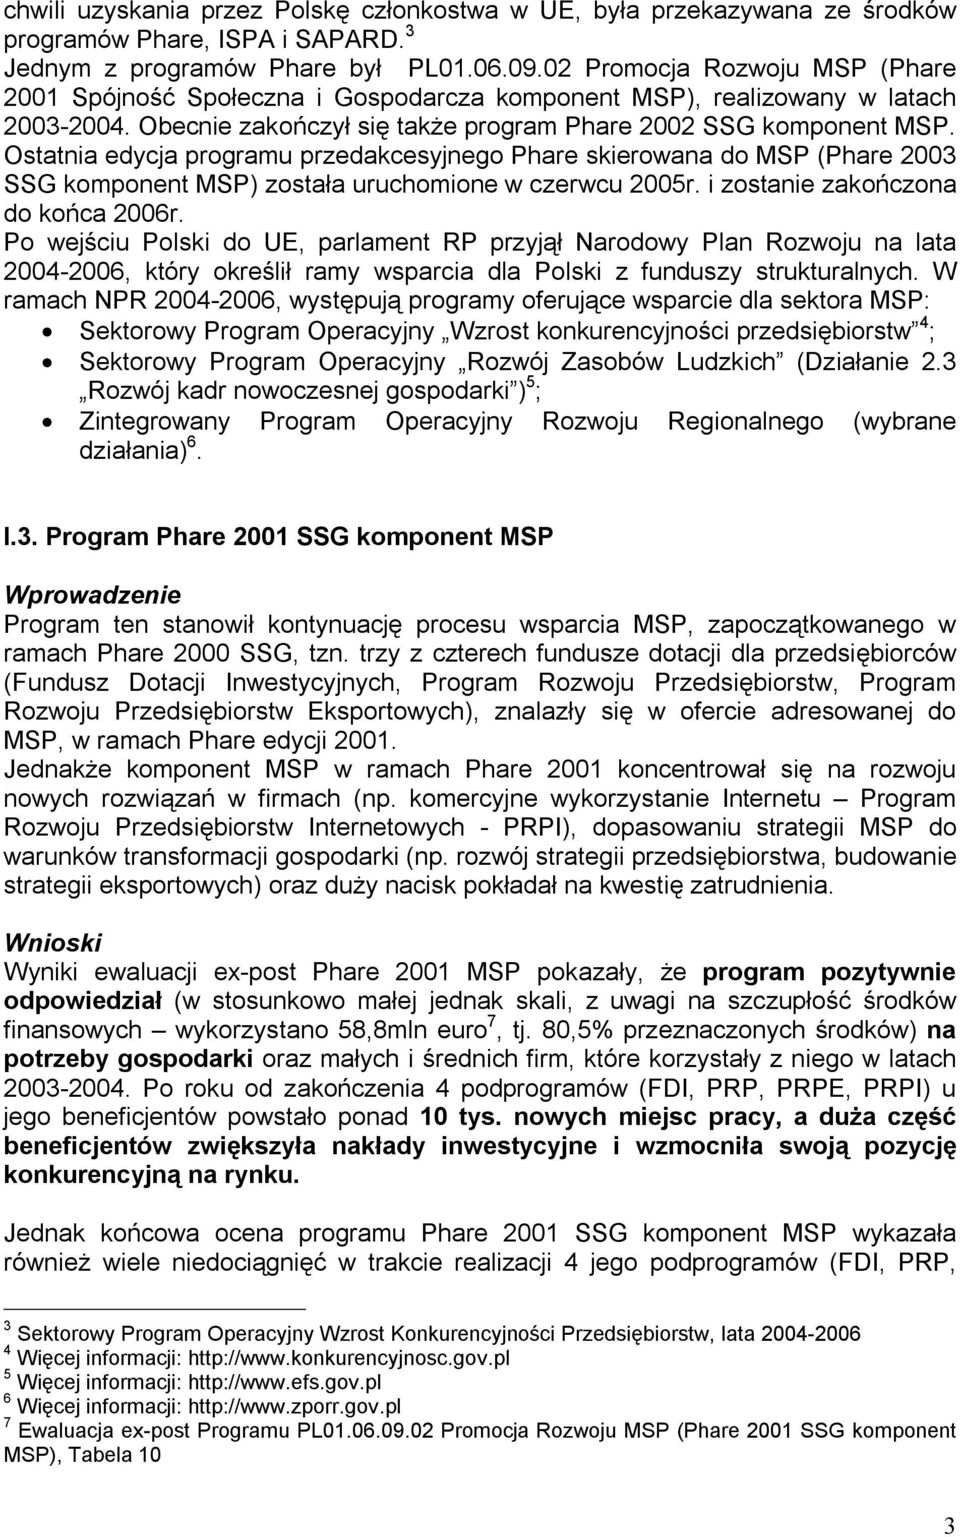 Ostatnia edycja programu przedakcesyjnego Phare skierowana do MSP (Phare 2003 SSG komponent MSP) została uruchomione w czerwcu 2005r. i zostanie zakończona do końca 2006r.